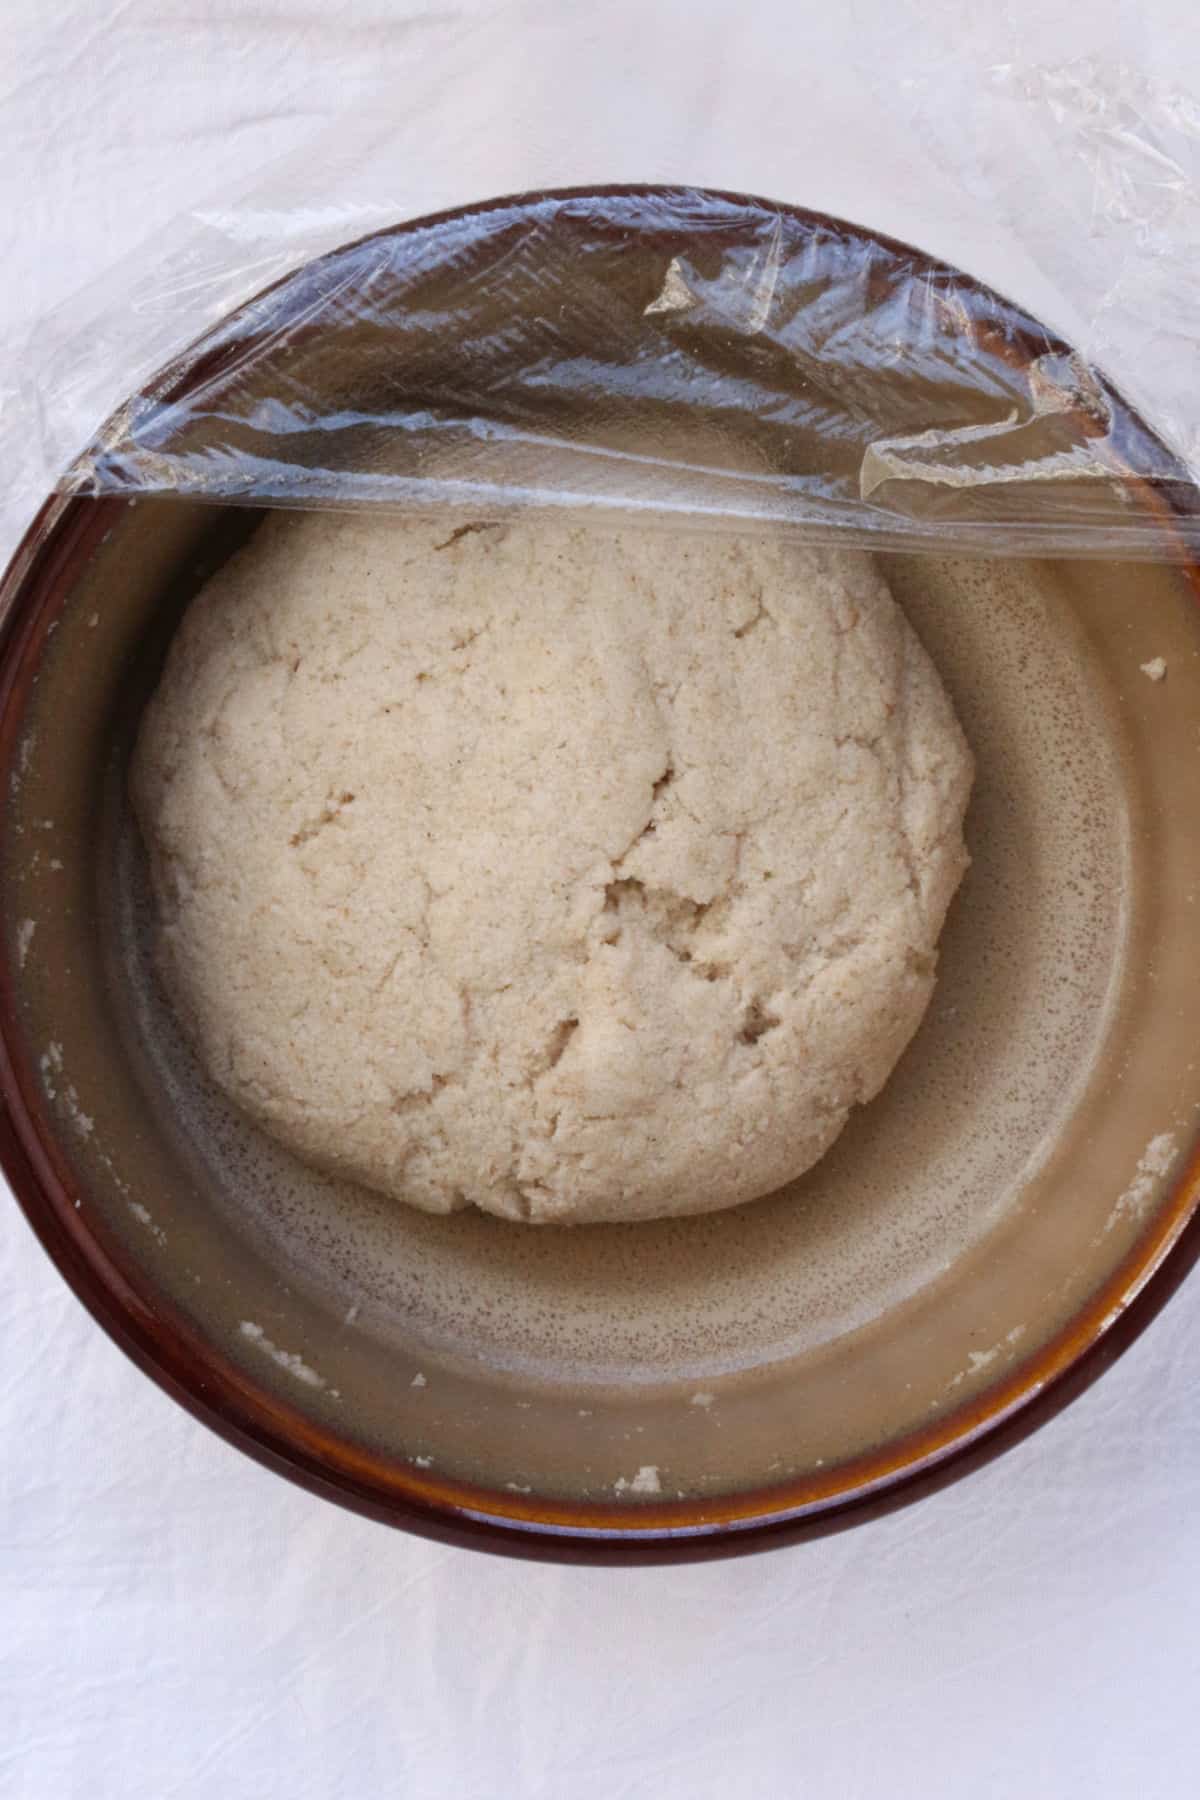 A ball of gluten-free dough for empanadas in a bowl